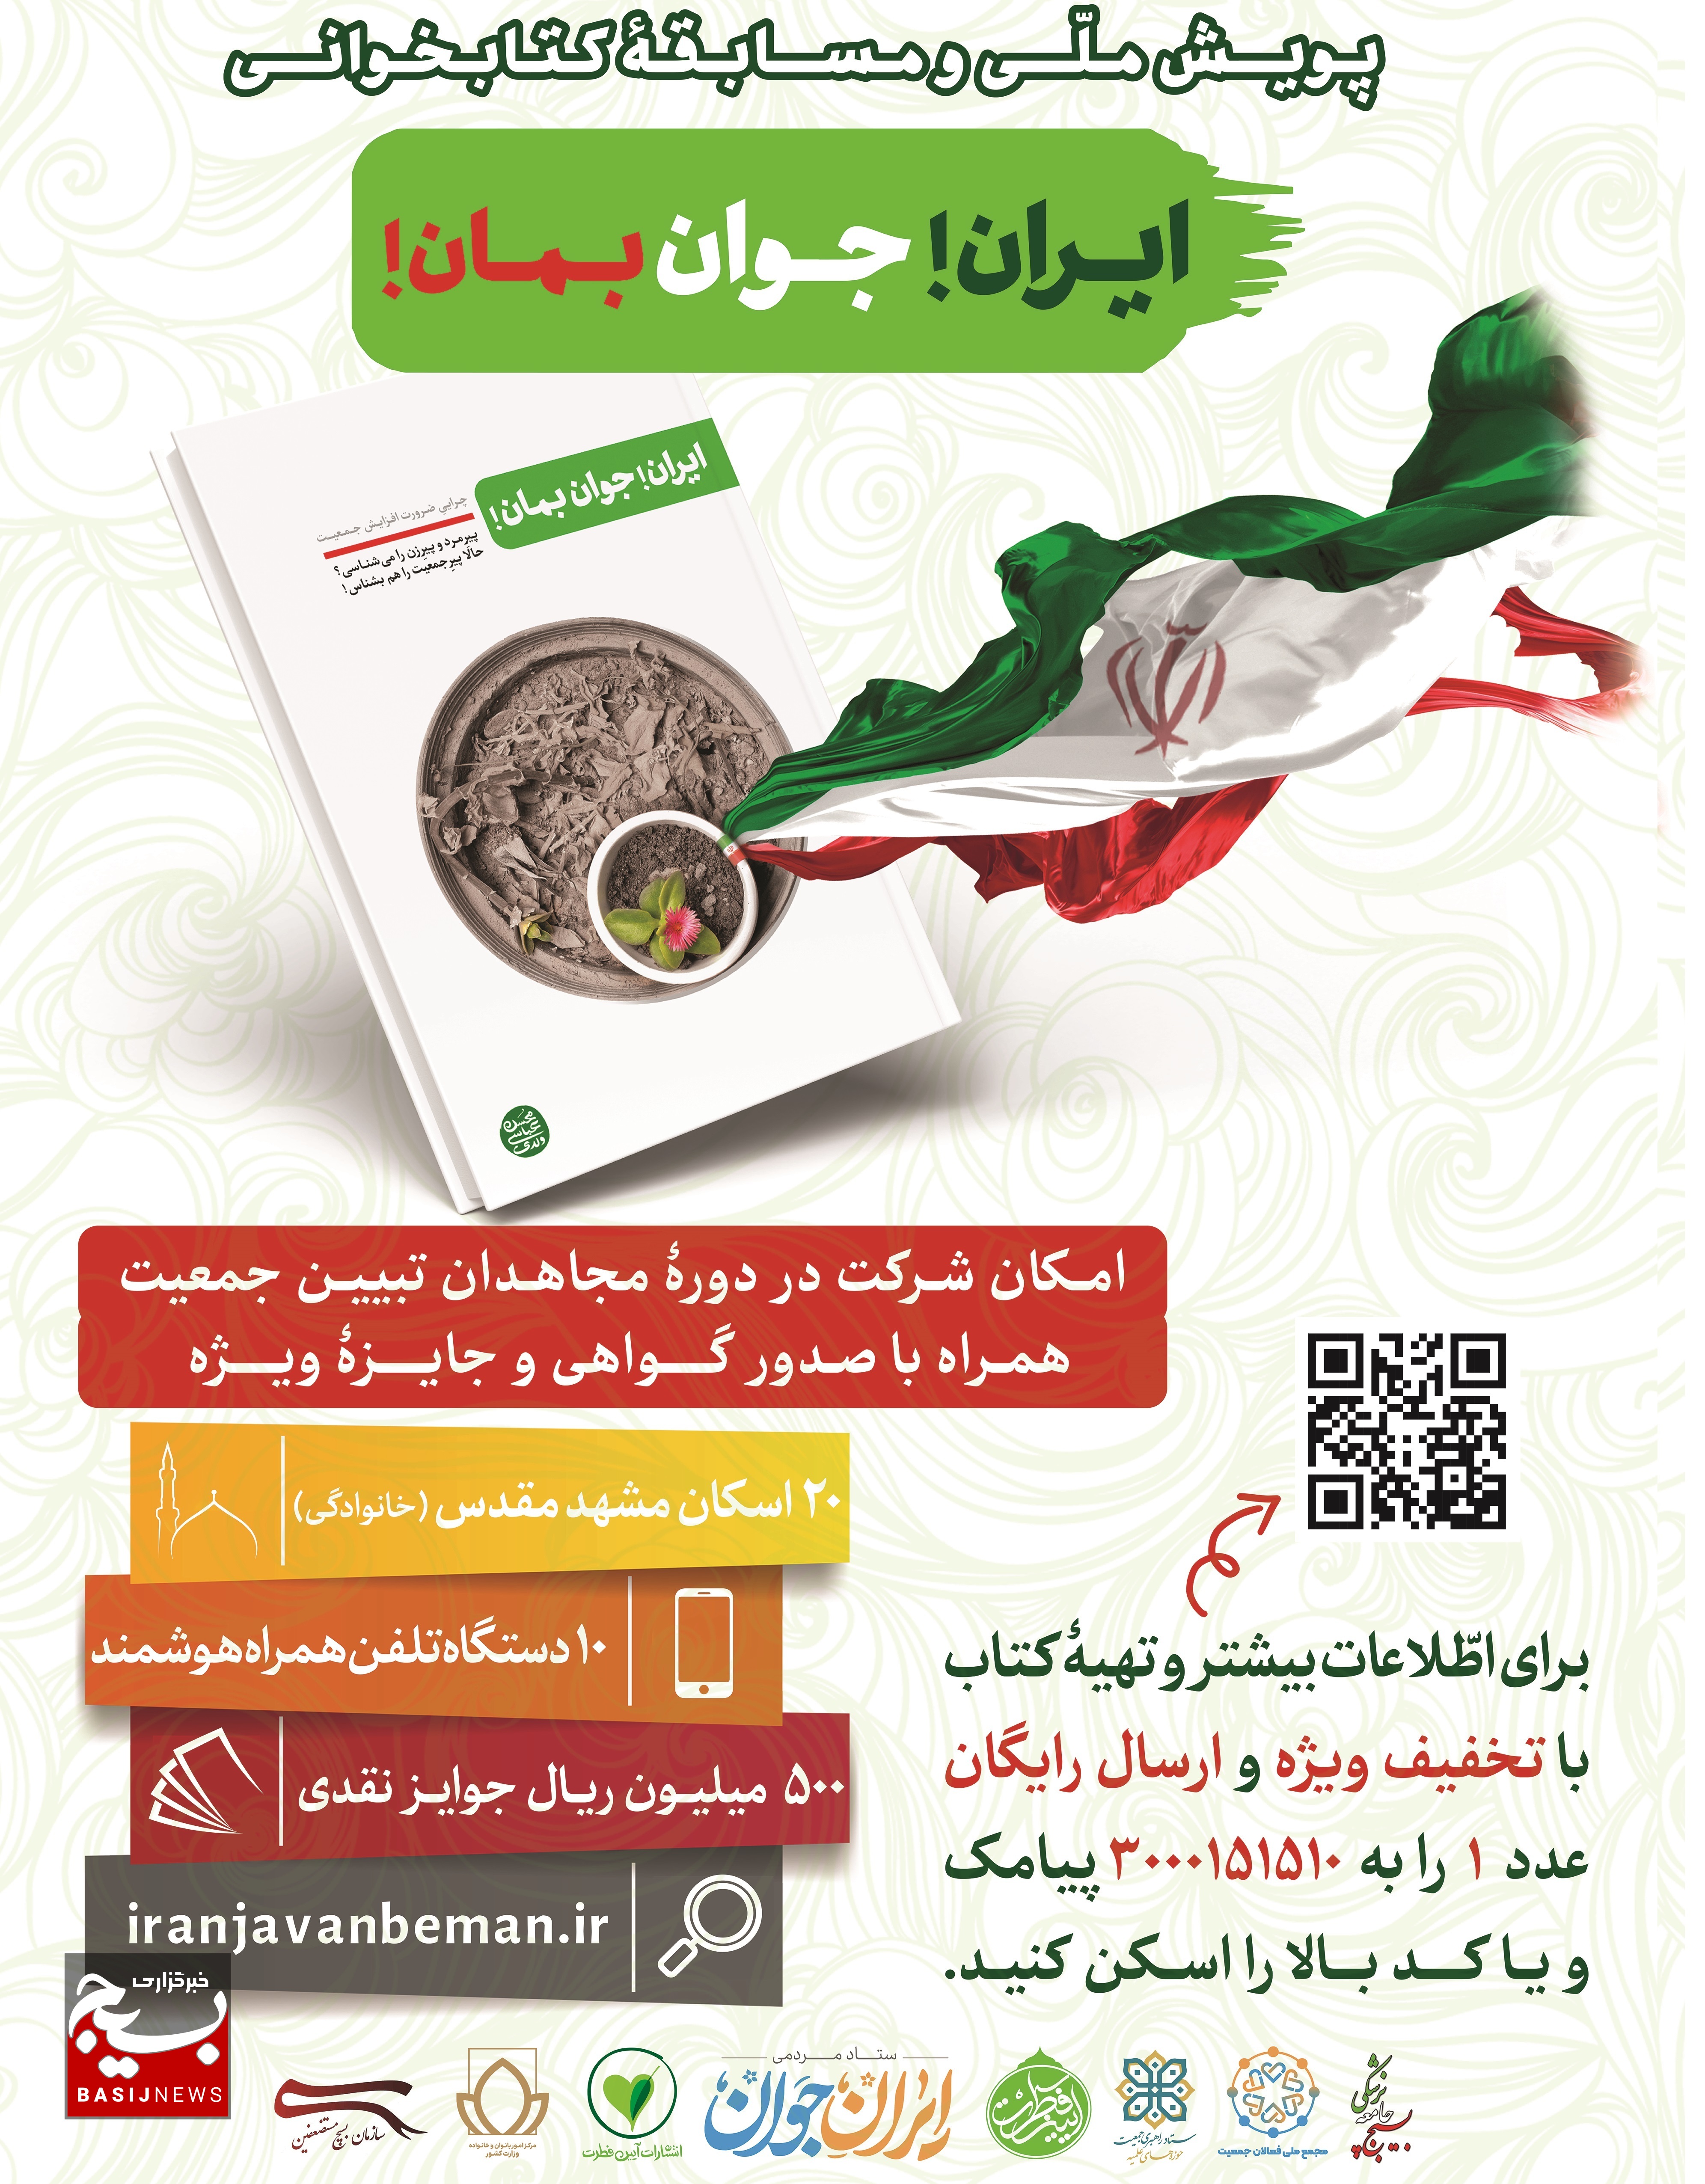 رونمایی از پوستر کتاب در سی و پنجمین نمایشگاه بین المللی کتاب تهران